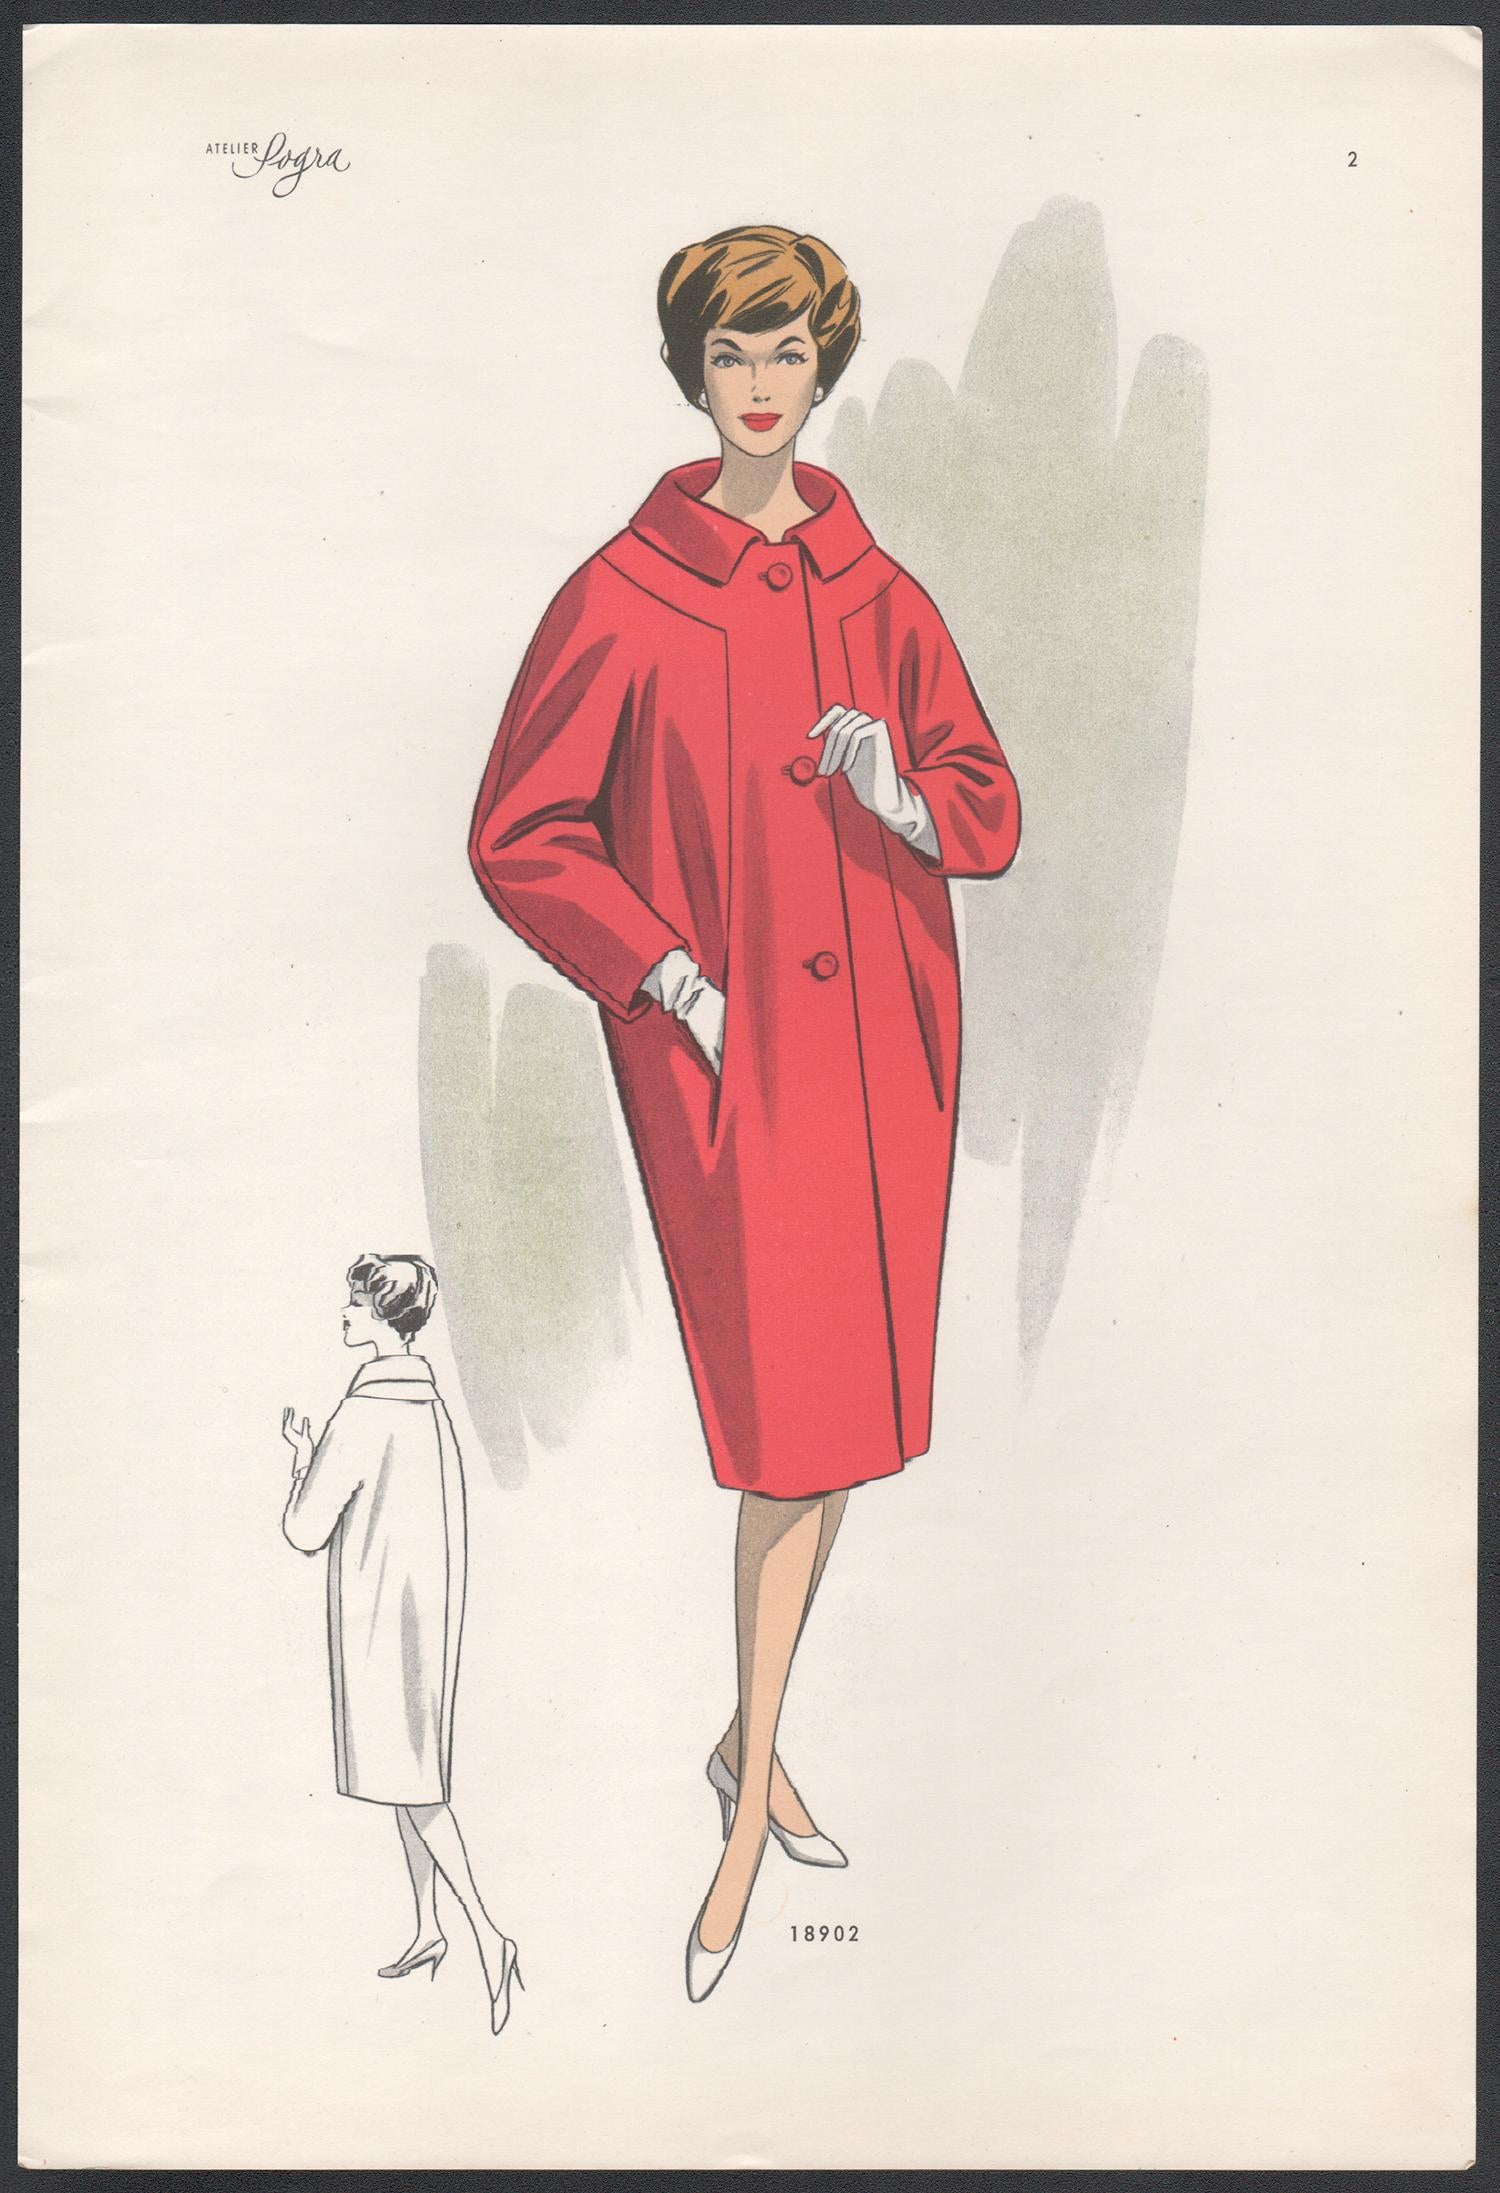 Europäisches Mid-Century 1959 Modedesign Vintage Lithographie Druck